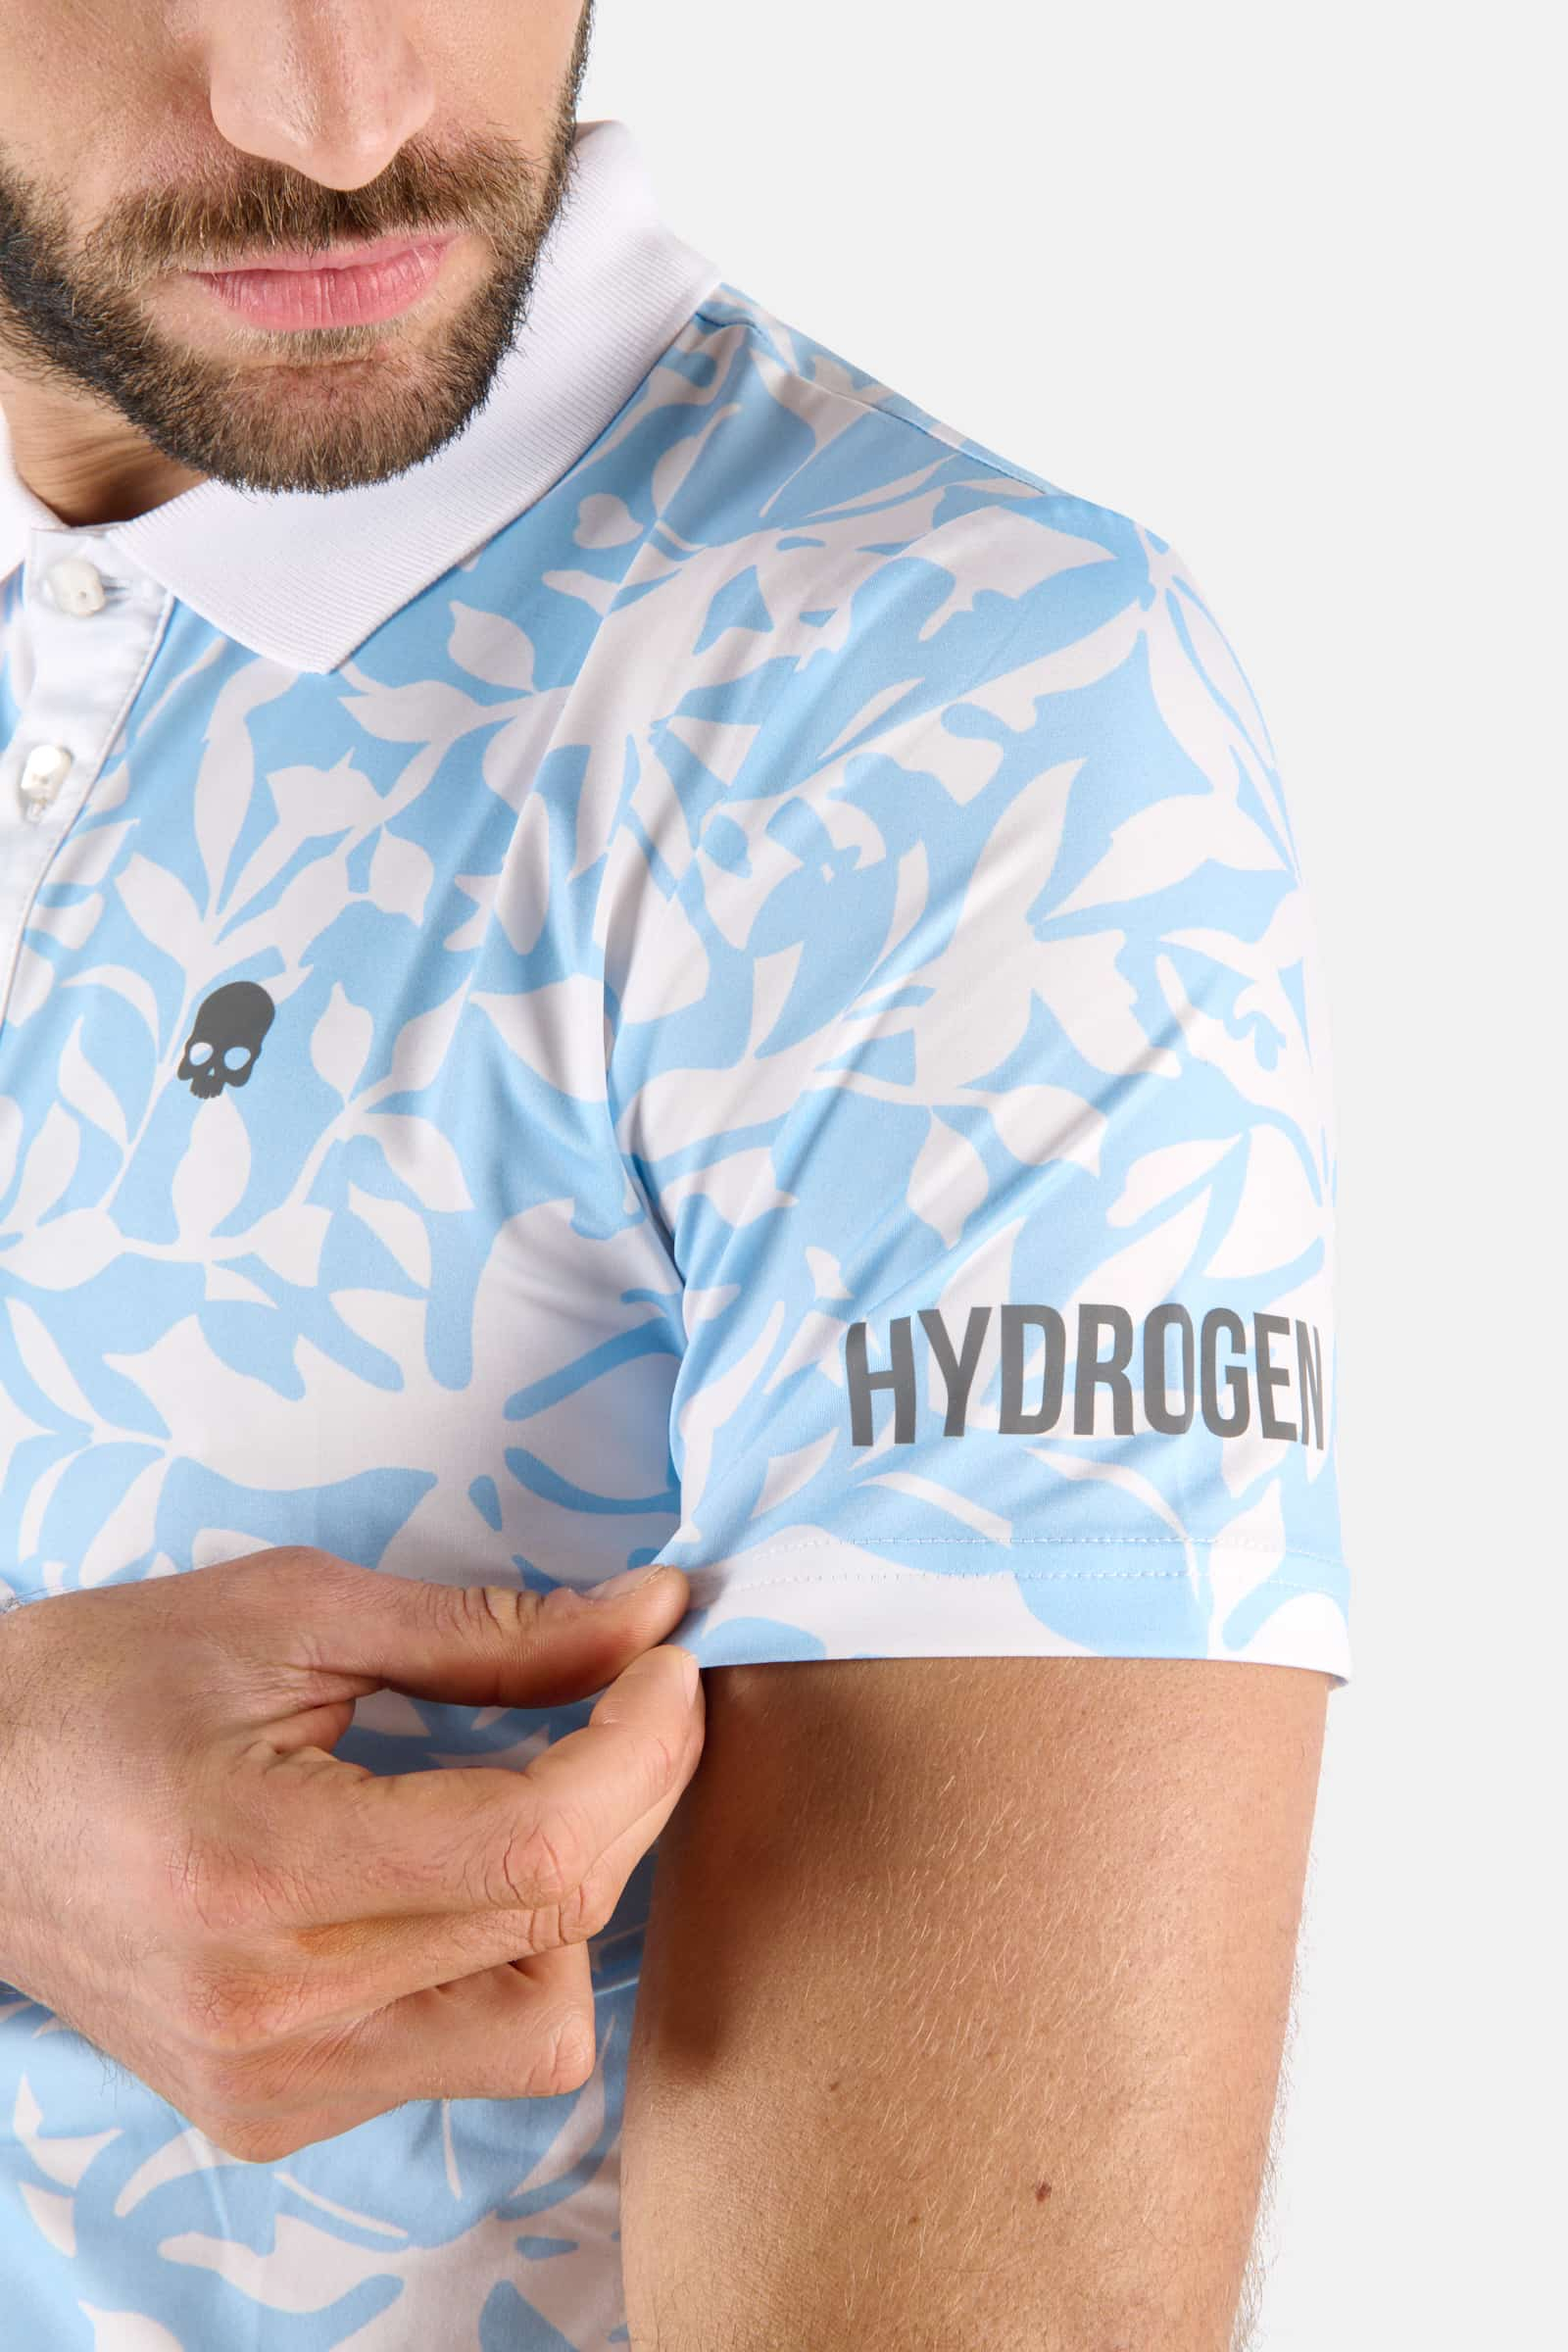 POLO CON STAMPA JUNGLE - Outlet Hydrogen - Abbigliamento sportivo